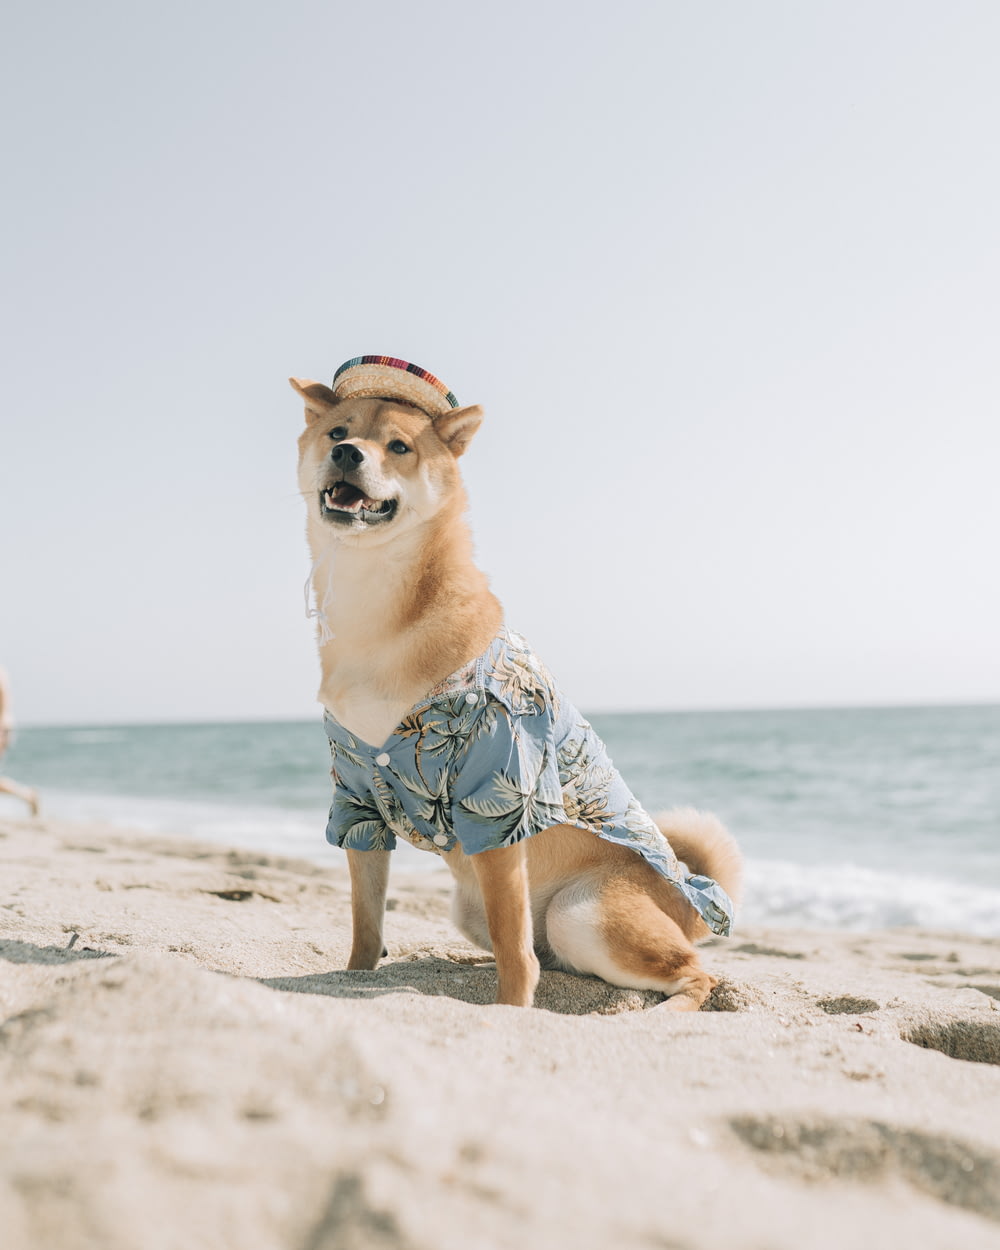 cane a pelo corto marrone e bianco sulla spiaggia durante il giorno